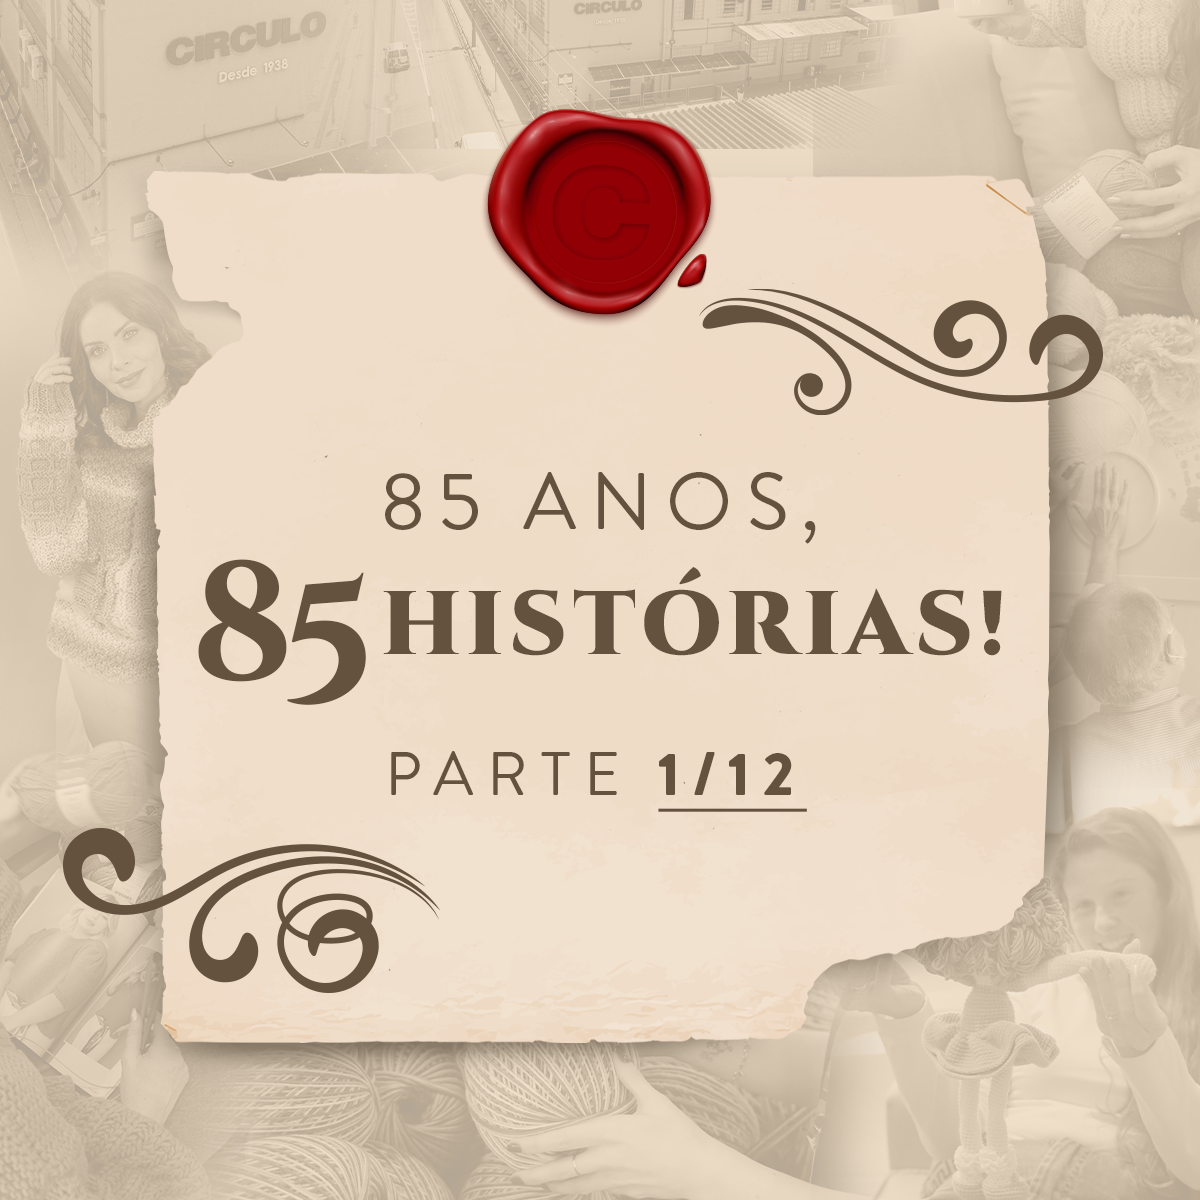 85 anos, 85 histórias: encante-se com os relatos de janeiro!